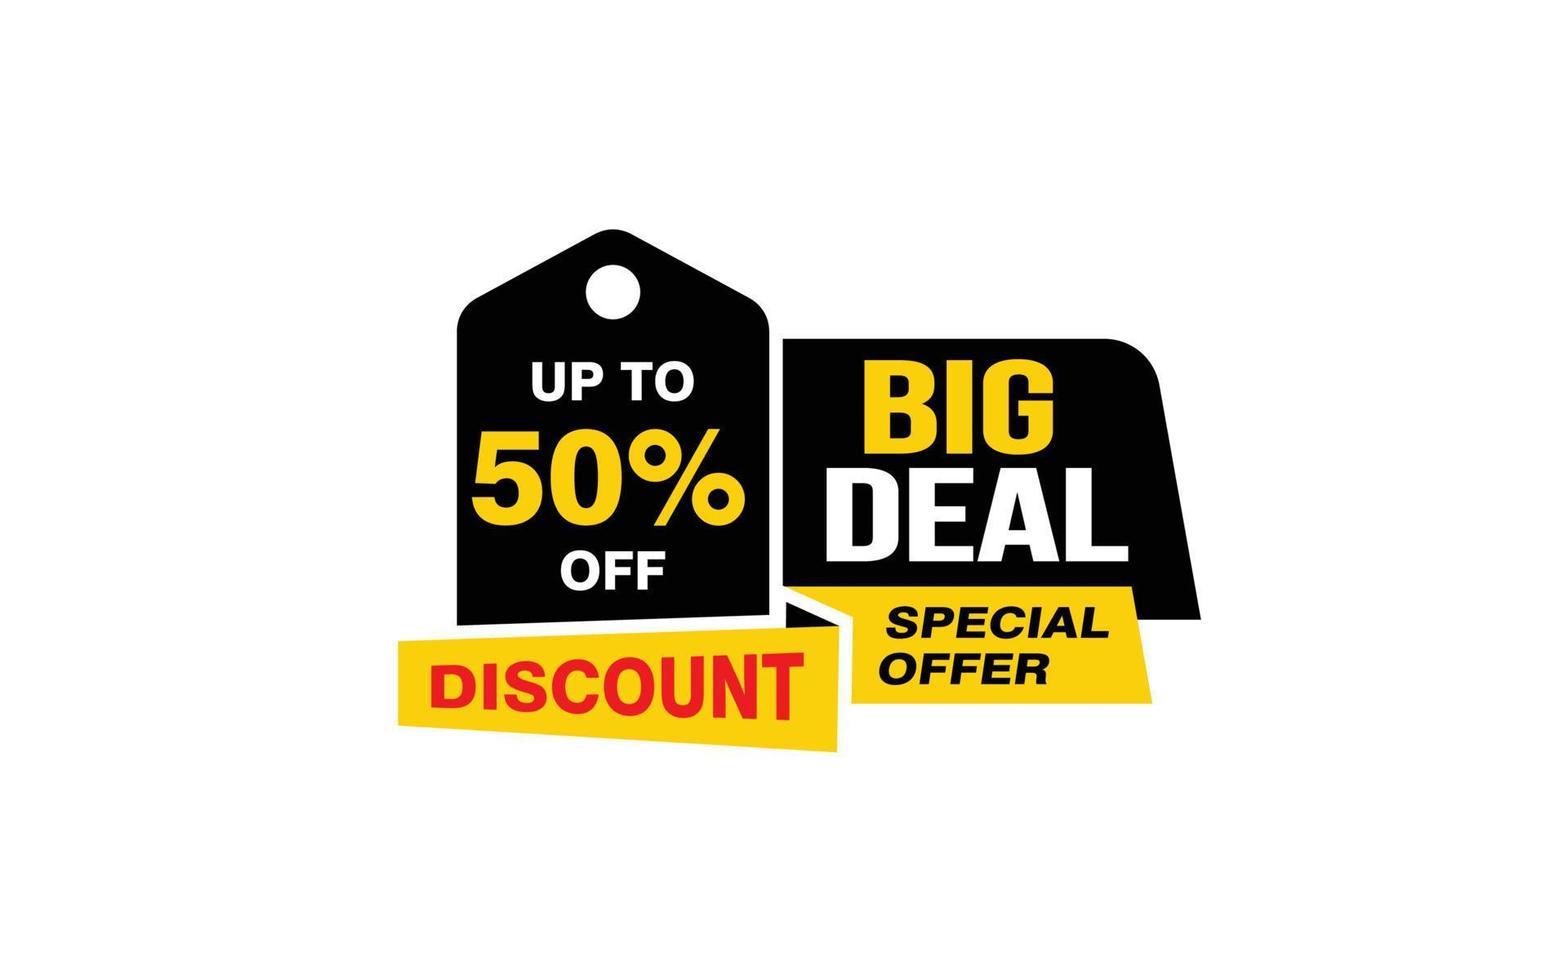 50-Prozent-Big-Deal-Angebot, Freigabe, Werbebanner-Layout mit Aufkleberstil. vektor